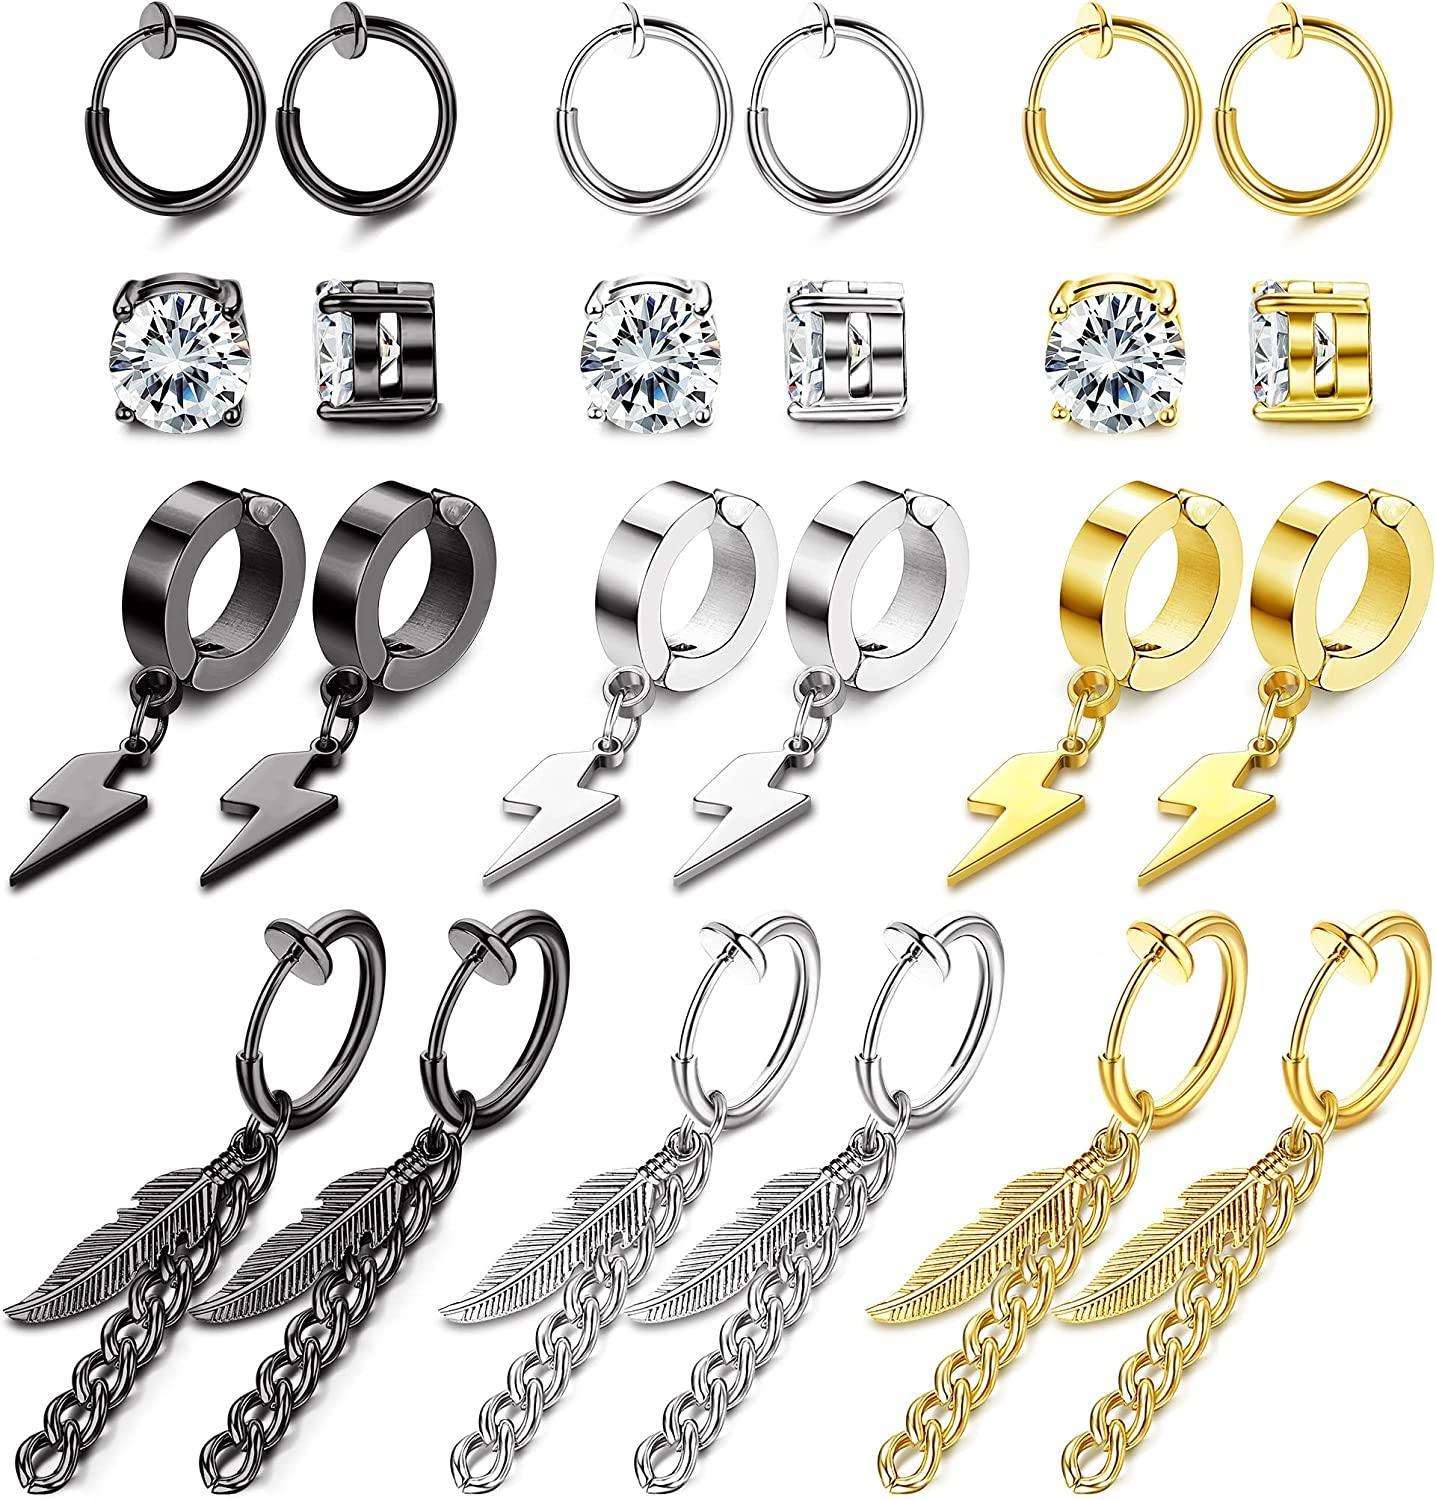 12 Pairs Magnetic Stud Earrings for Men Stainless Magnetic Earrings Non-Piercing Cross Dangle Hoop Earrings CZ Clip on Earring CZ Fake Earrings Magnet Earrings Set